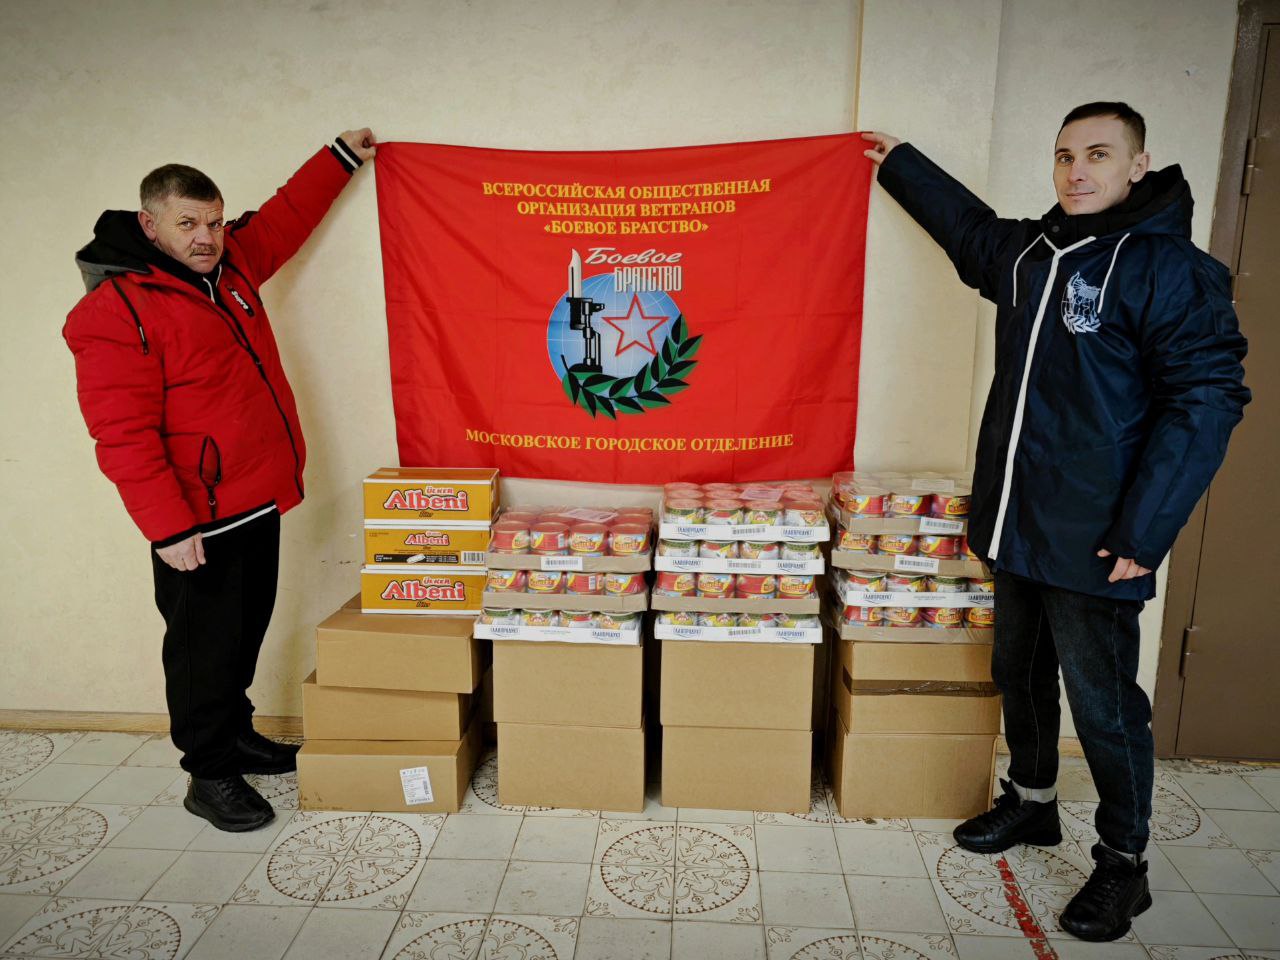 Сбор гуманитарной помощи продолжился в Михайлово-Ярцевском